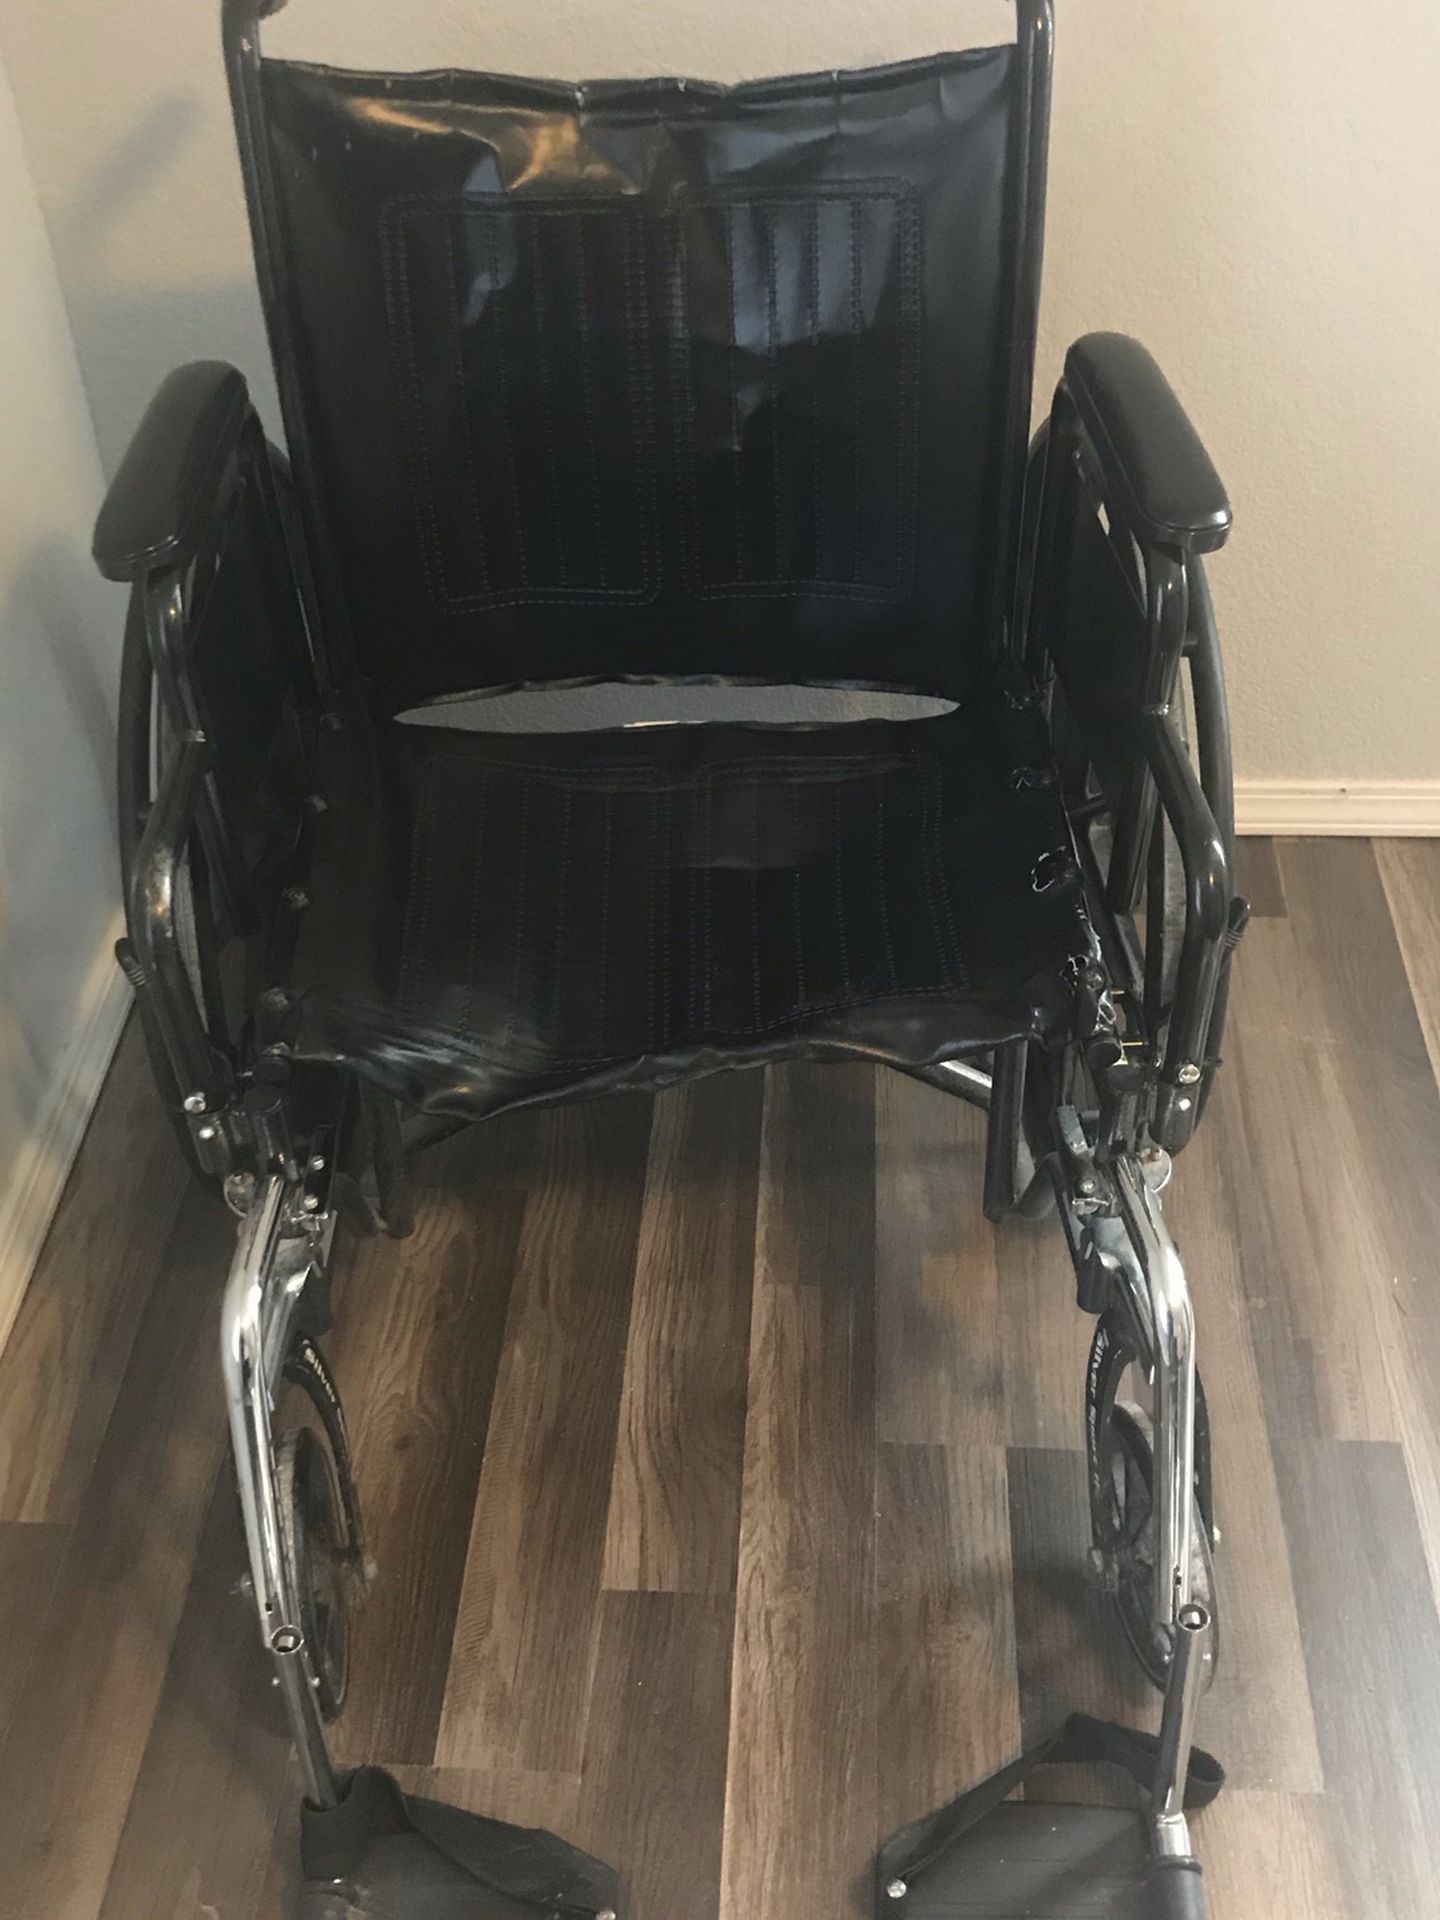 Drive Wheelchair